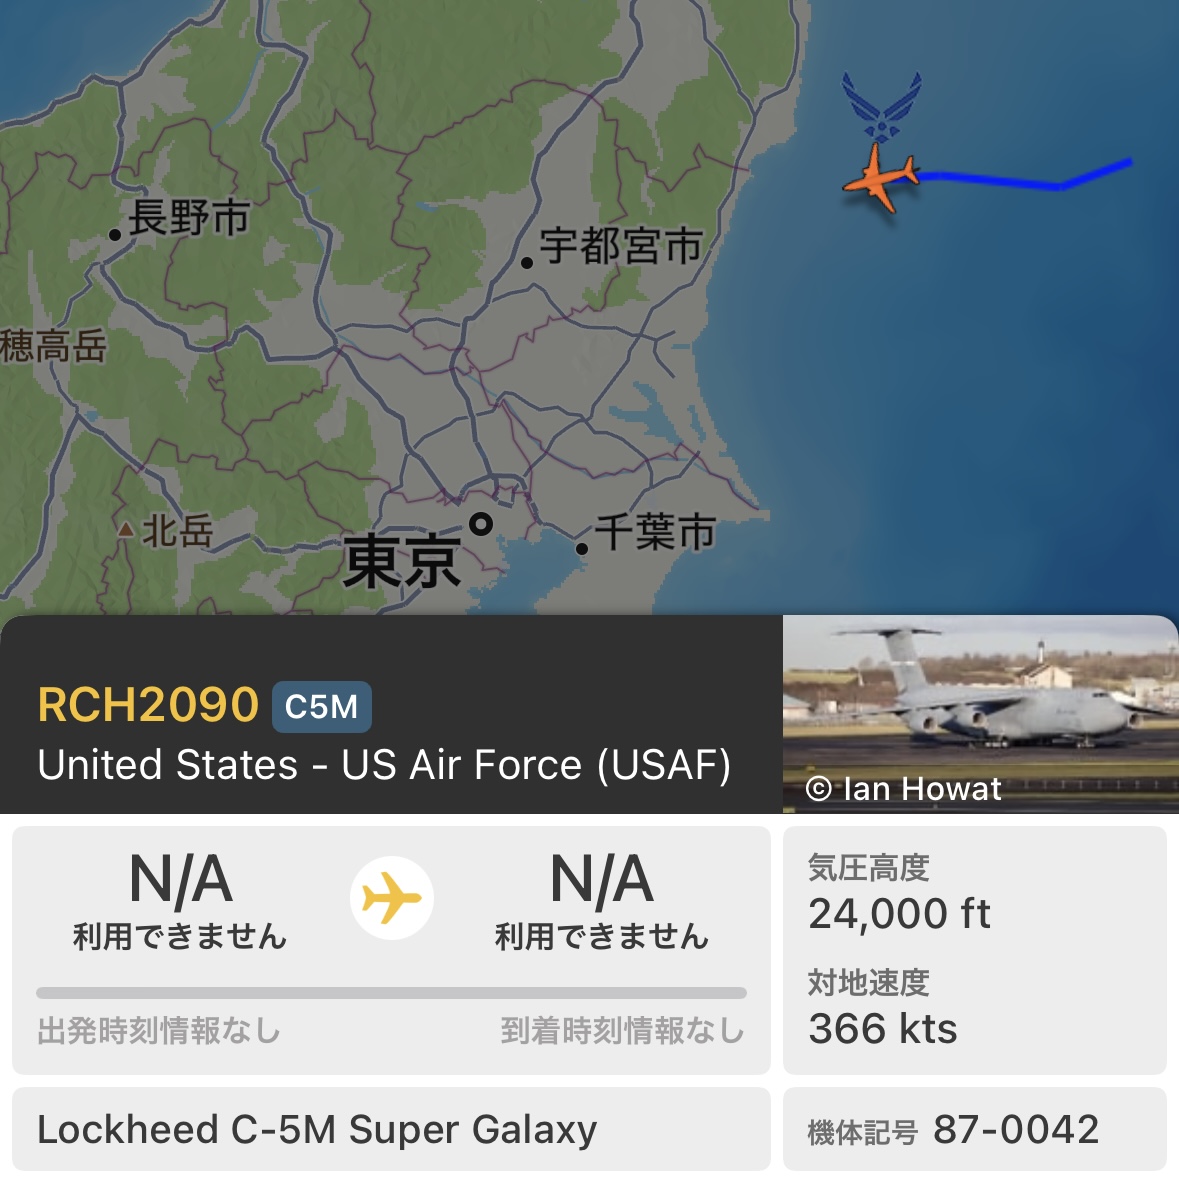 横田基地
C-5M 87-0042
お待たせー。
明日は地上展示に参加ッ！

#YokotaAB #RCH2090